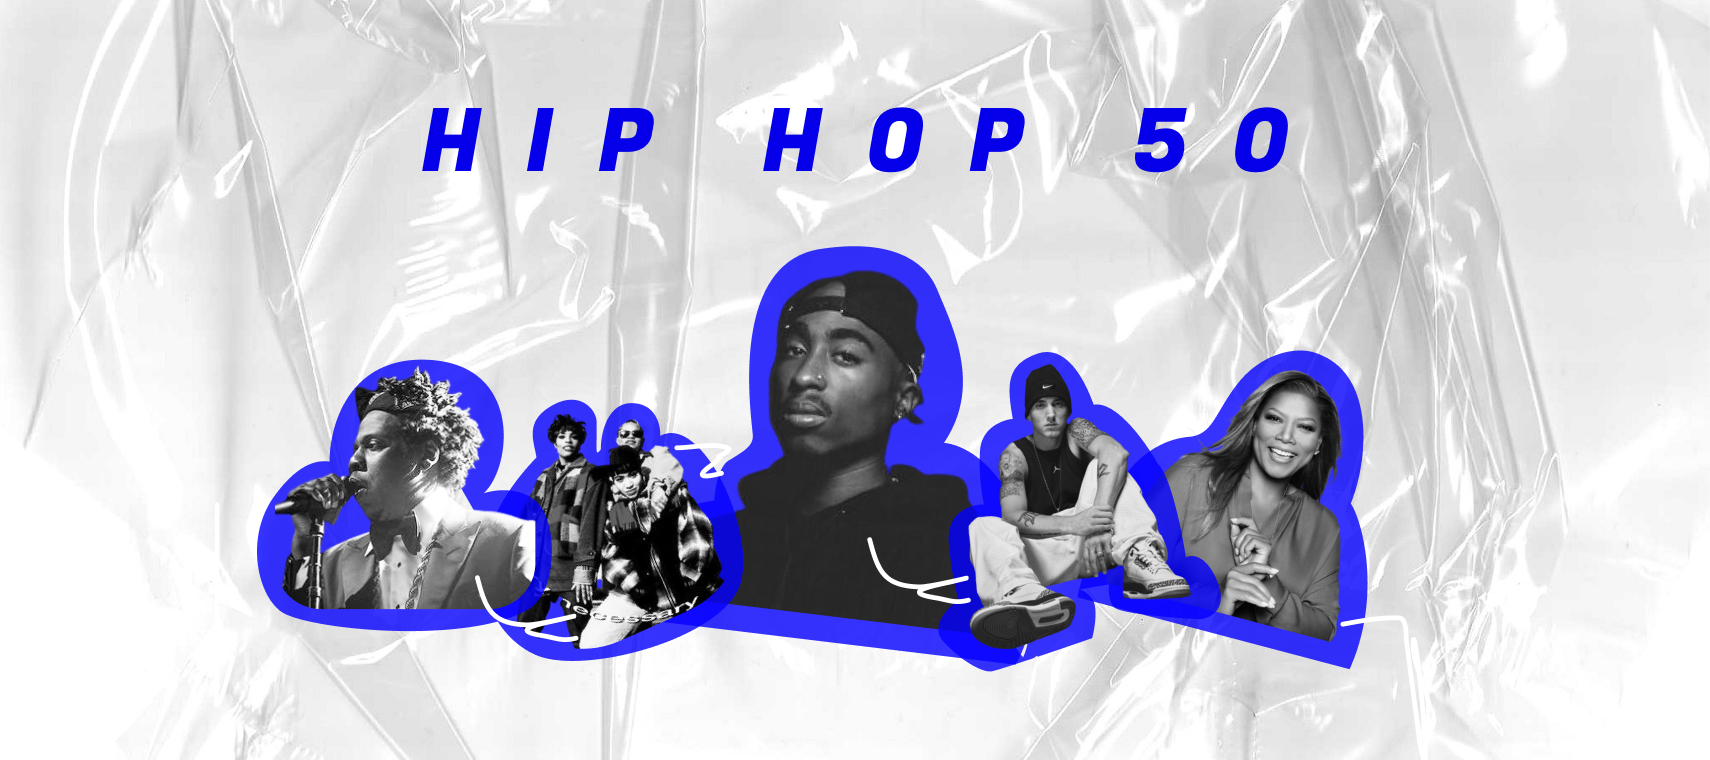 Celebra los 50 años del Hip Hop con nosotros 🎉